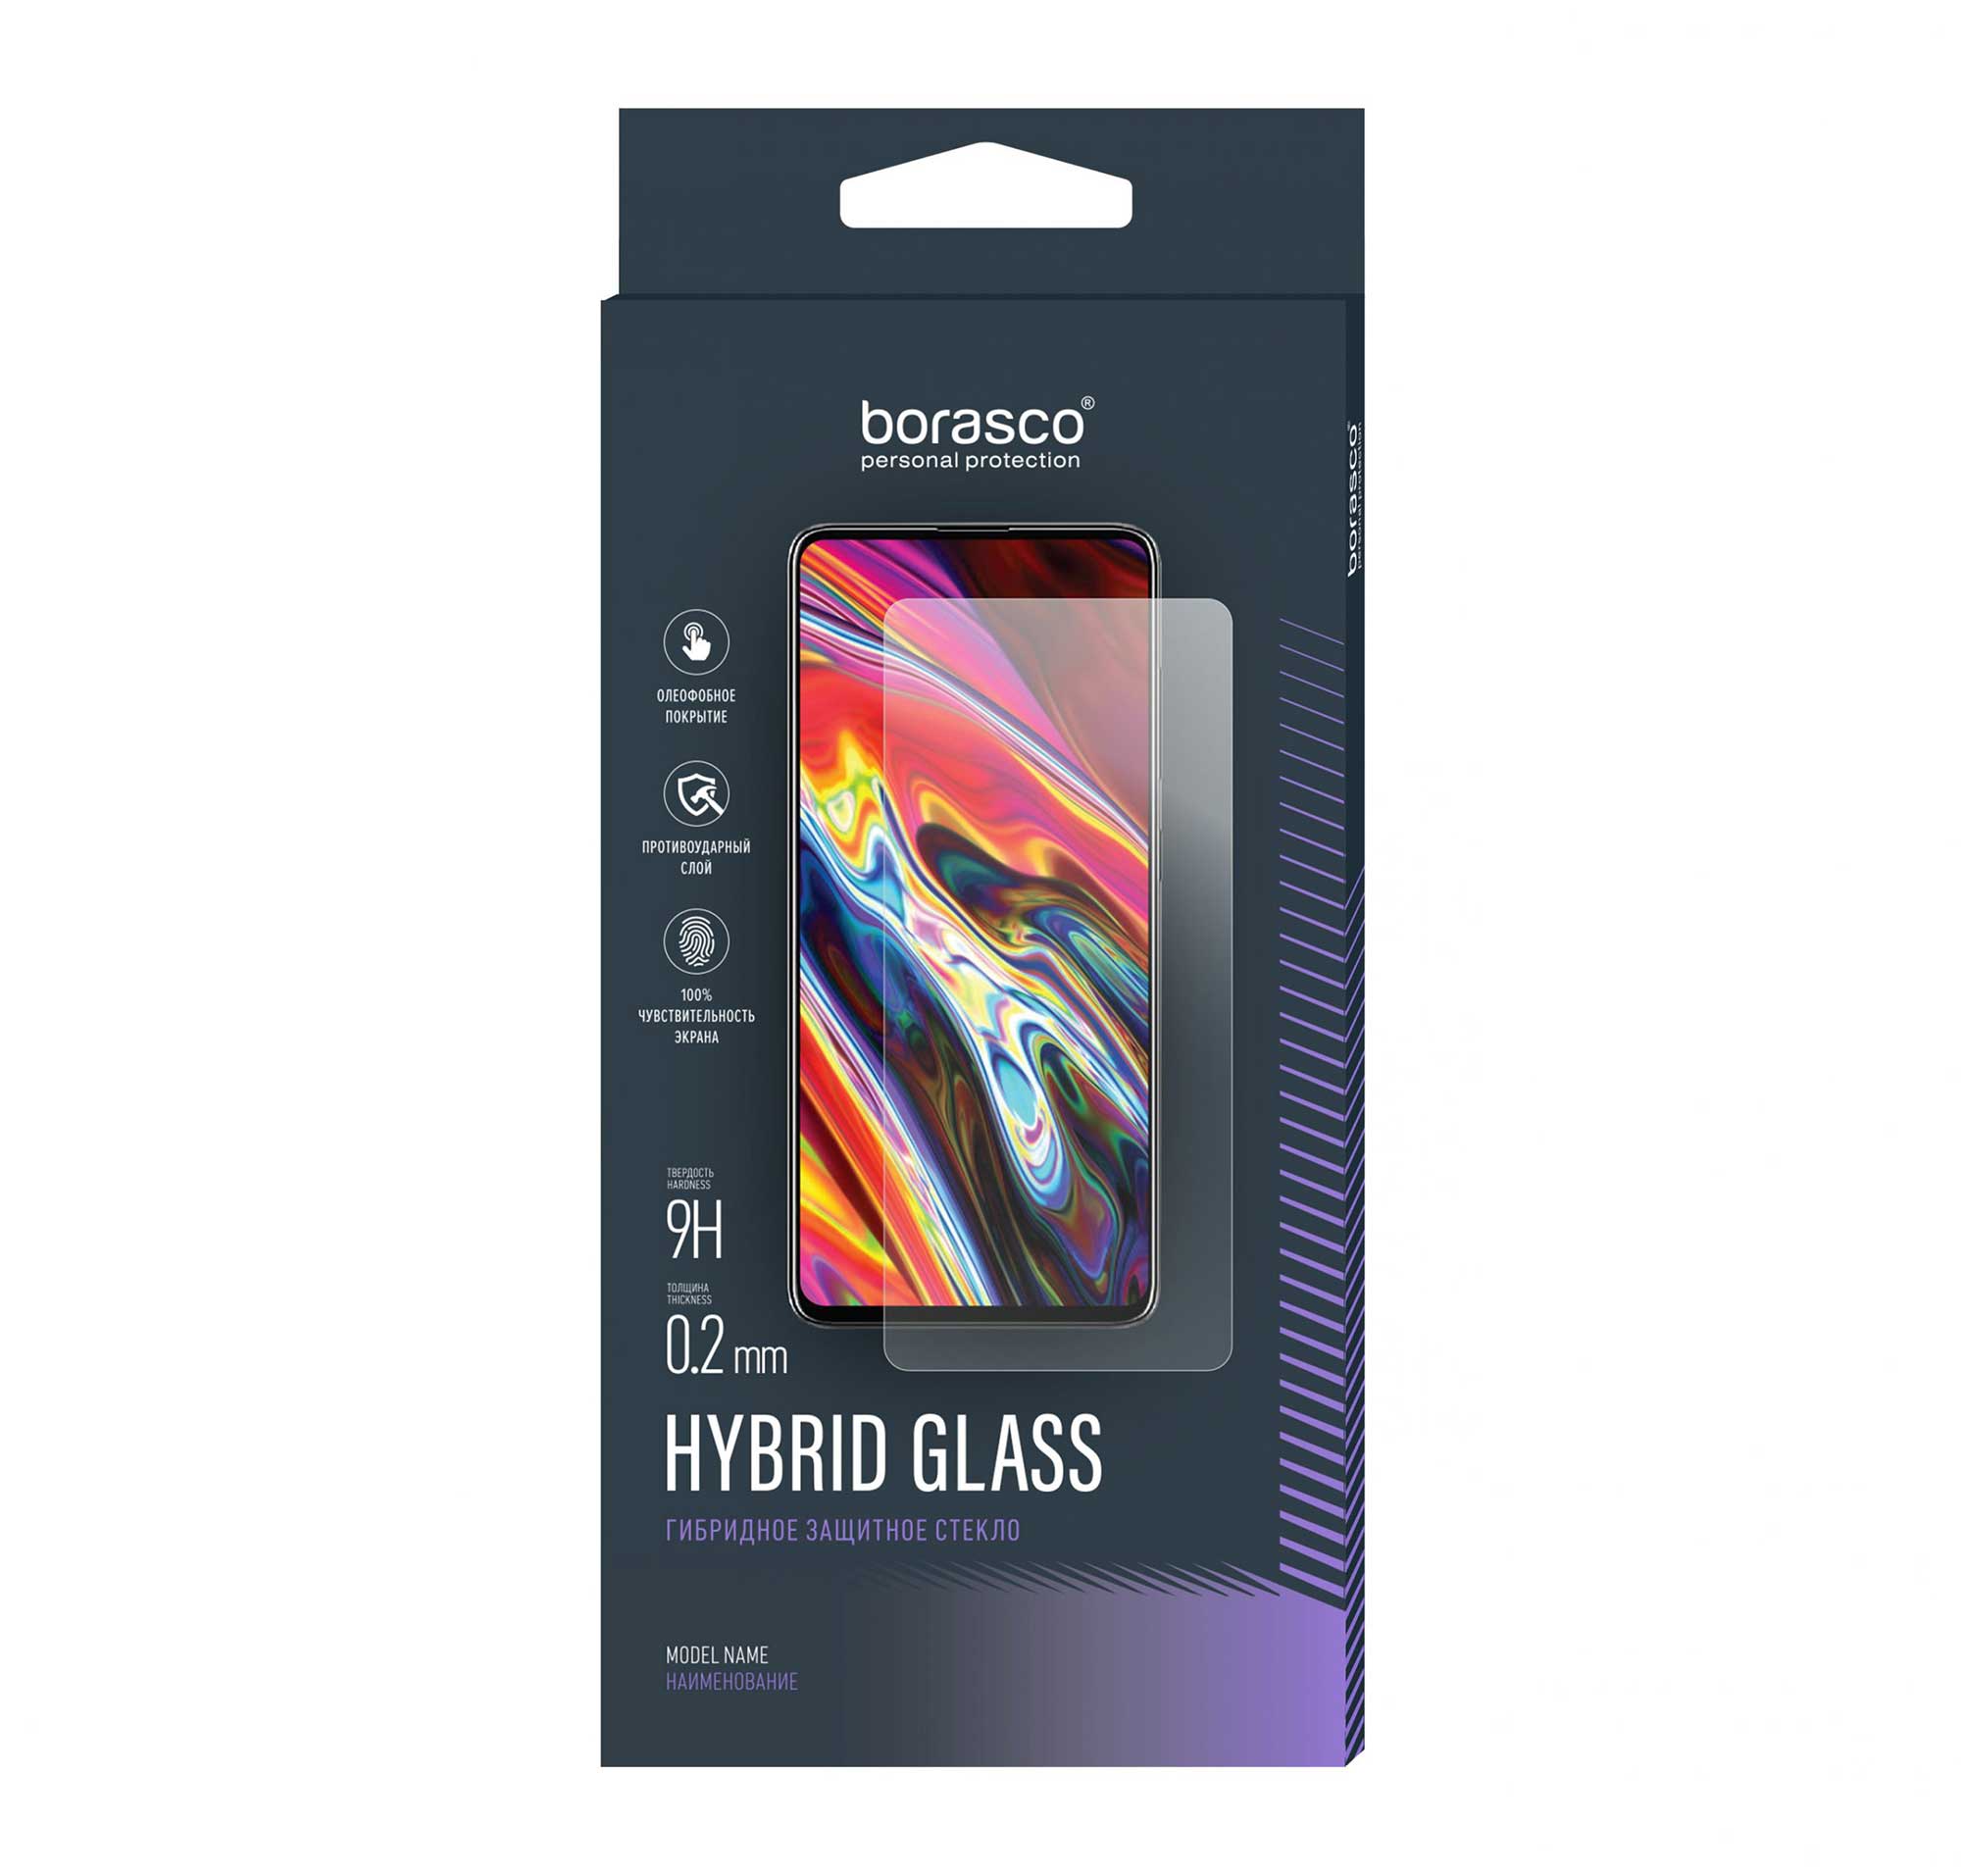 Защитное стекло BoraSCO Hybrid Glass для Nokia 1 закаленное стекло 9h с полным покрытием для nokia 6 защита экрана для nokia 3 3 1 plus защитное стекло на nokia 5 5 1 6 6 1 2018 7 plus